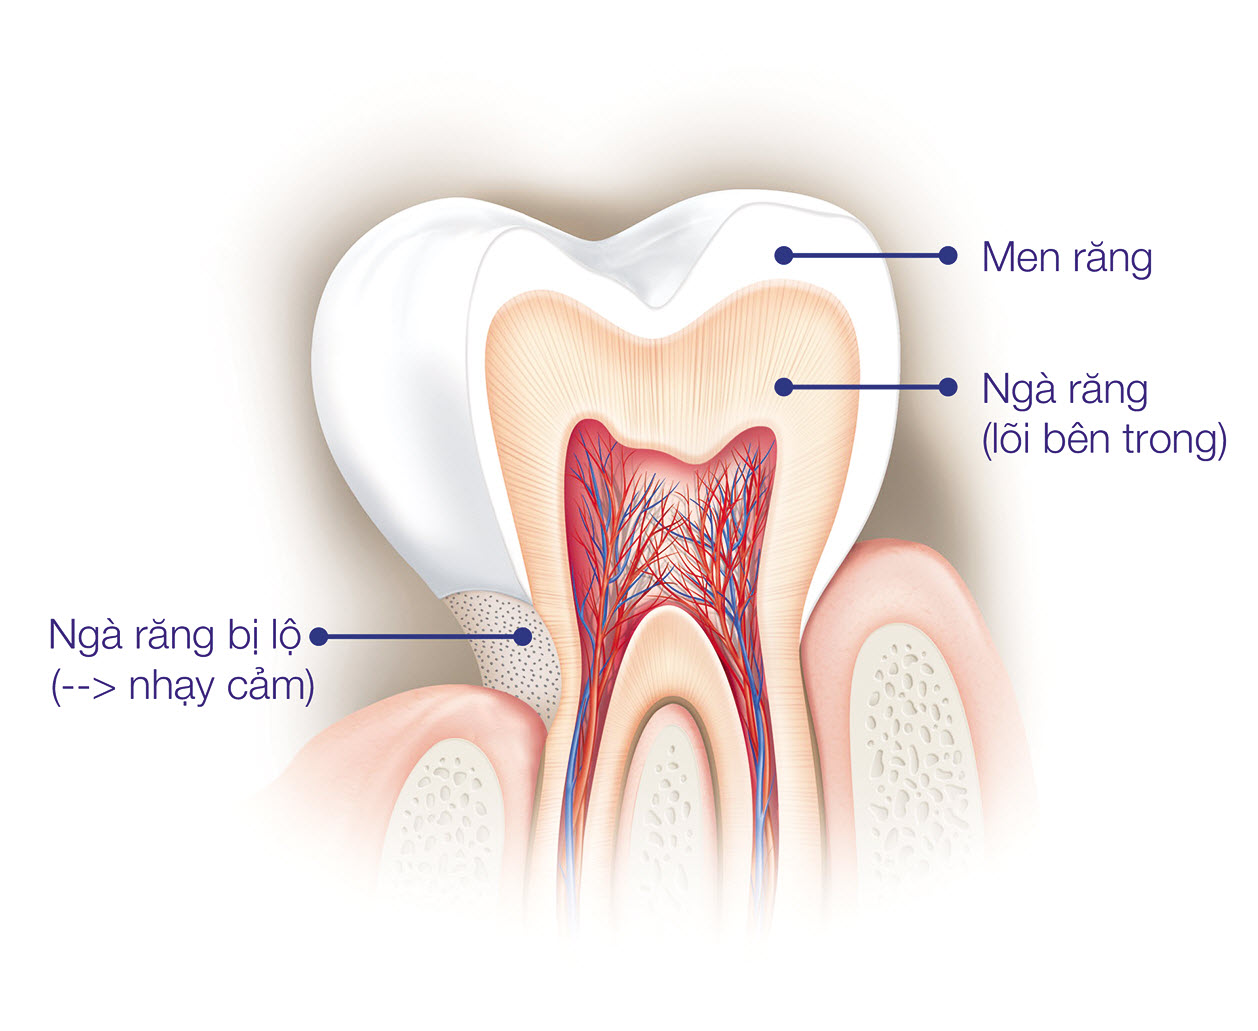 Mặt cắt dọc của một chiếc răng